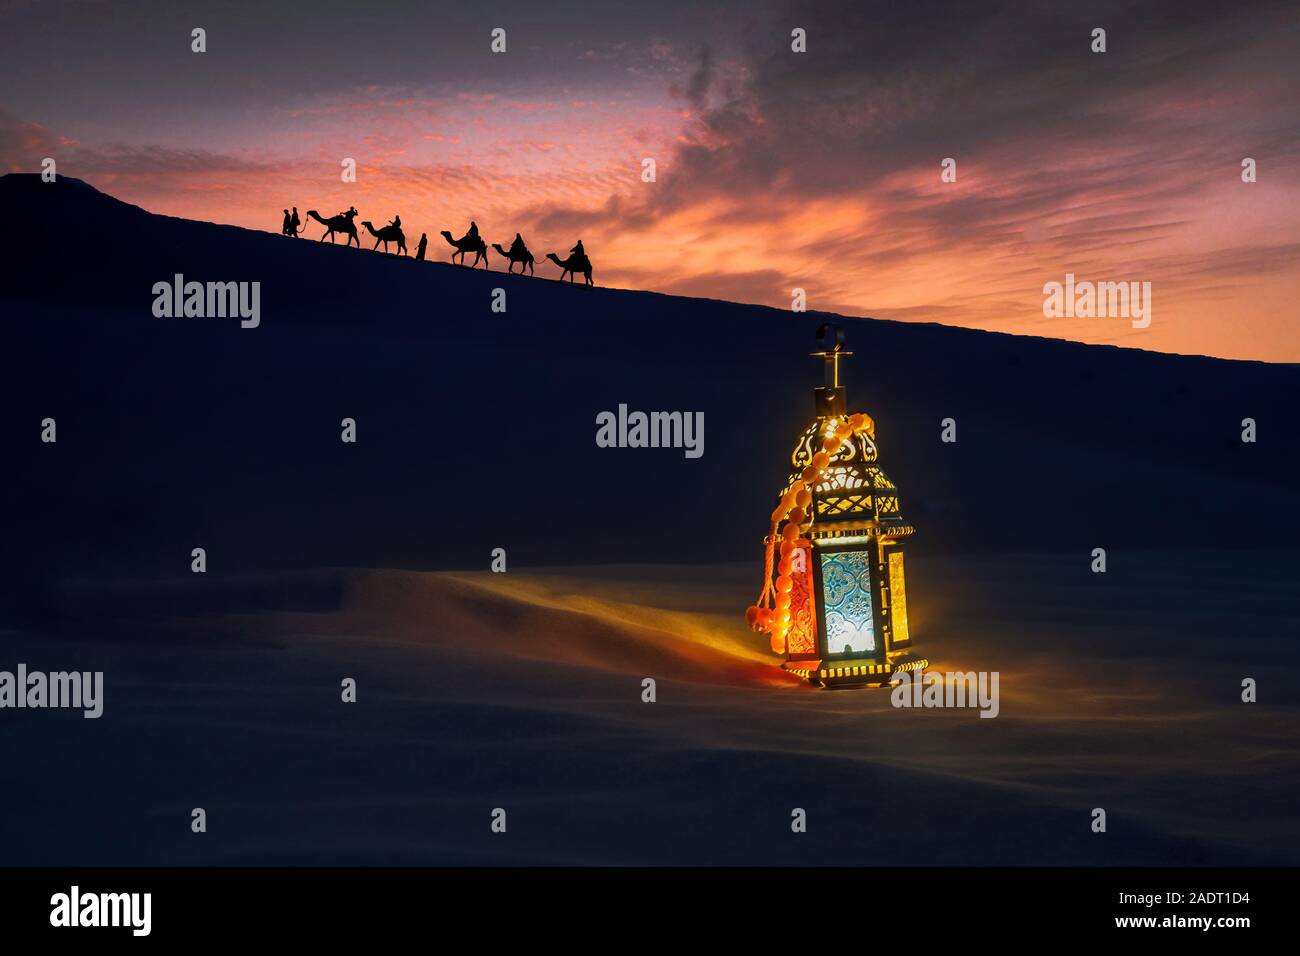 Silhouette Camel Trail in der Wüste mit Ramadan Licht Lampe Stockfoto